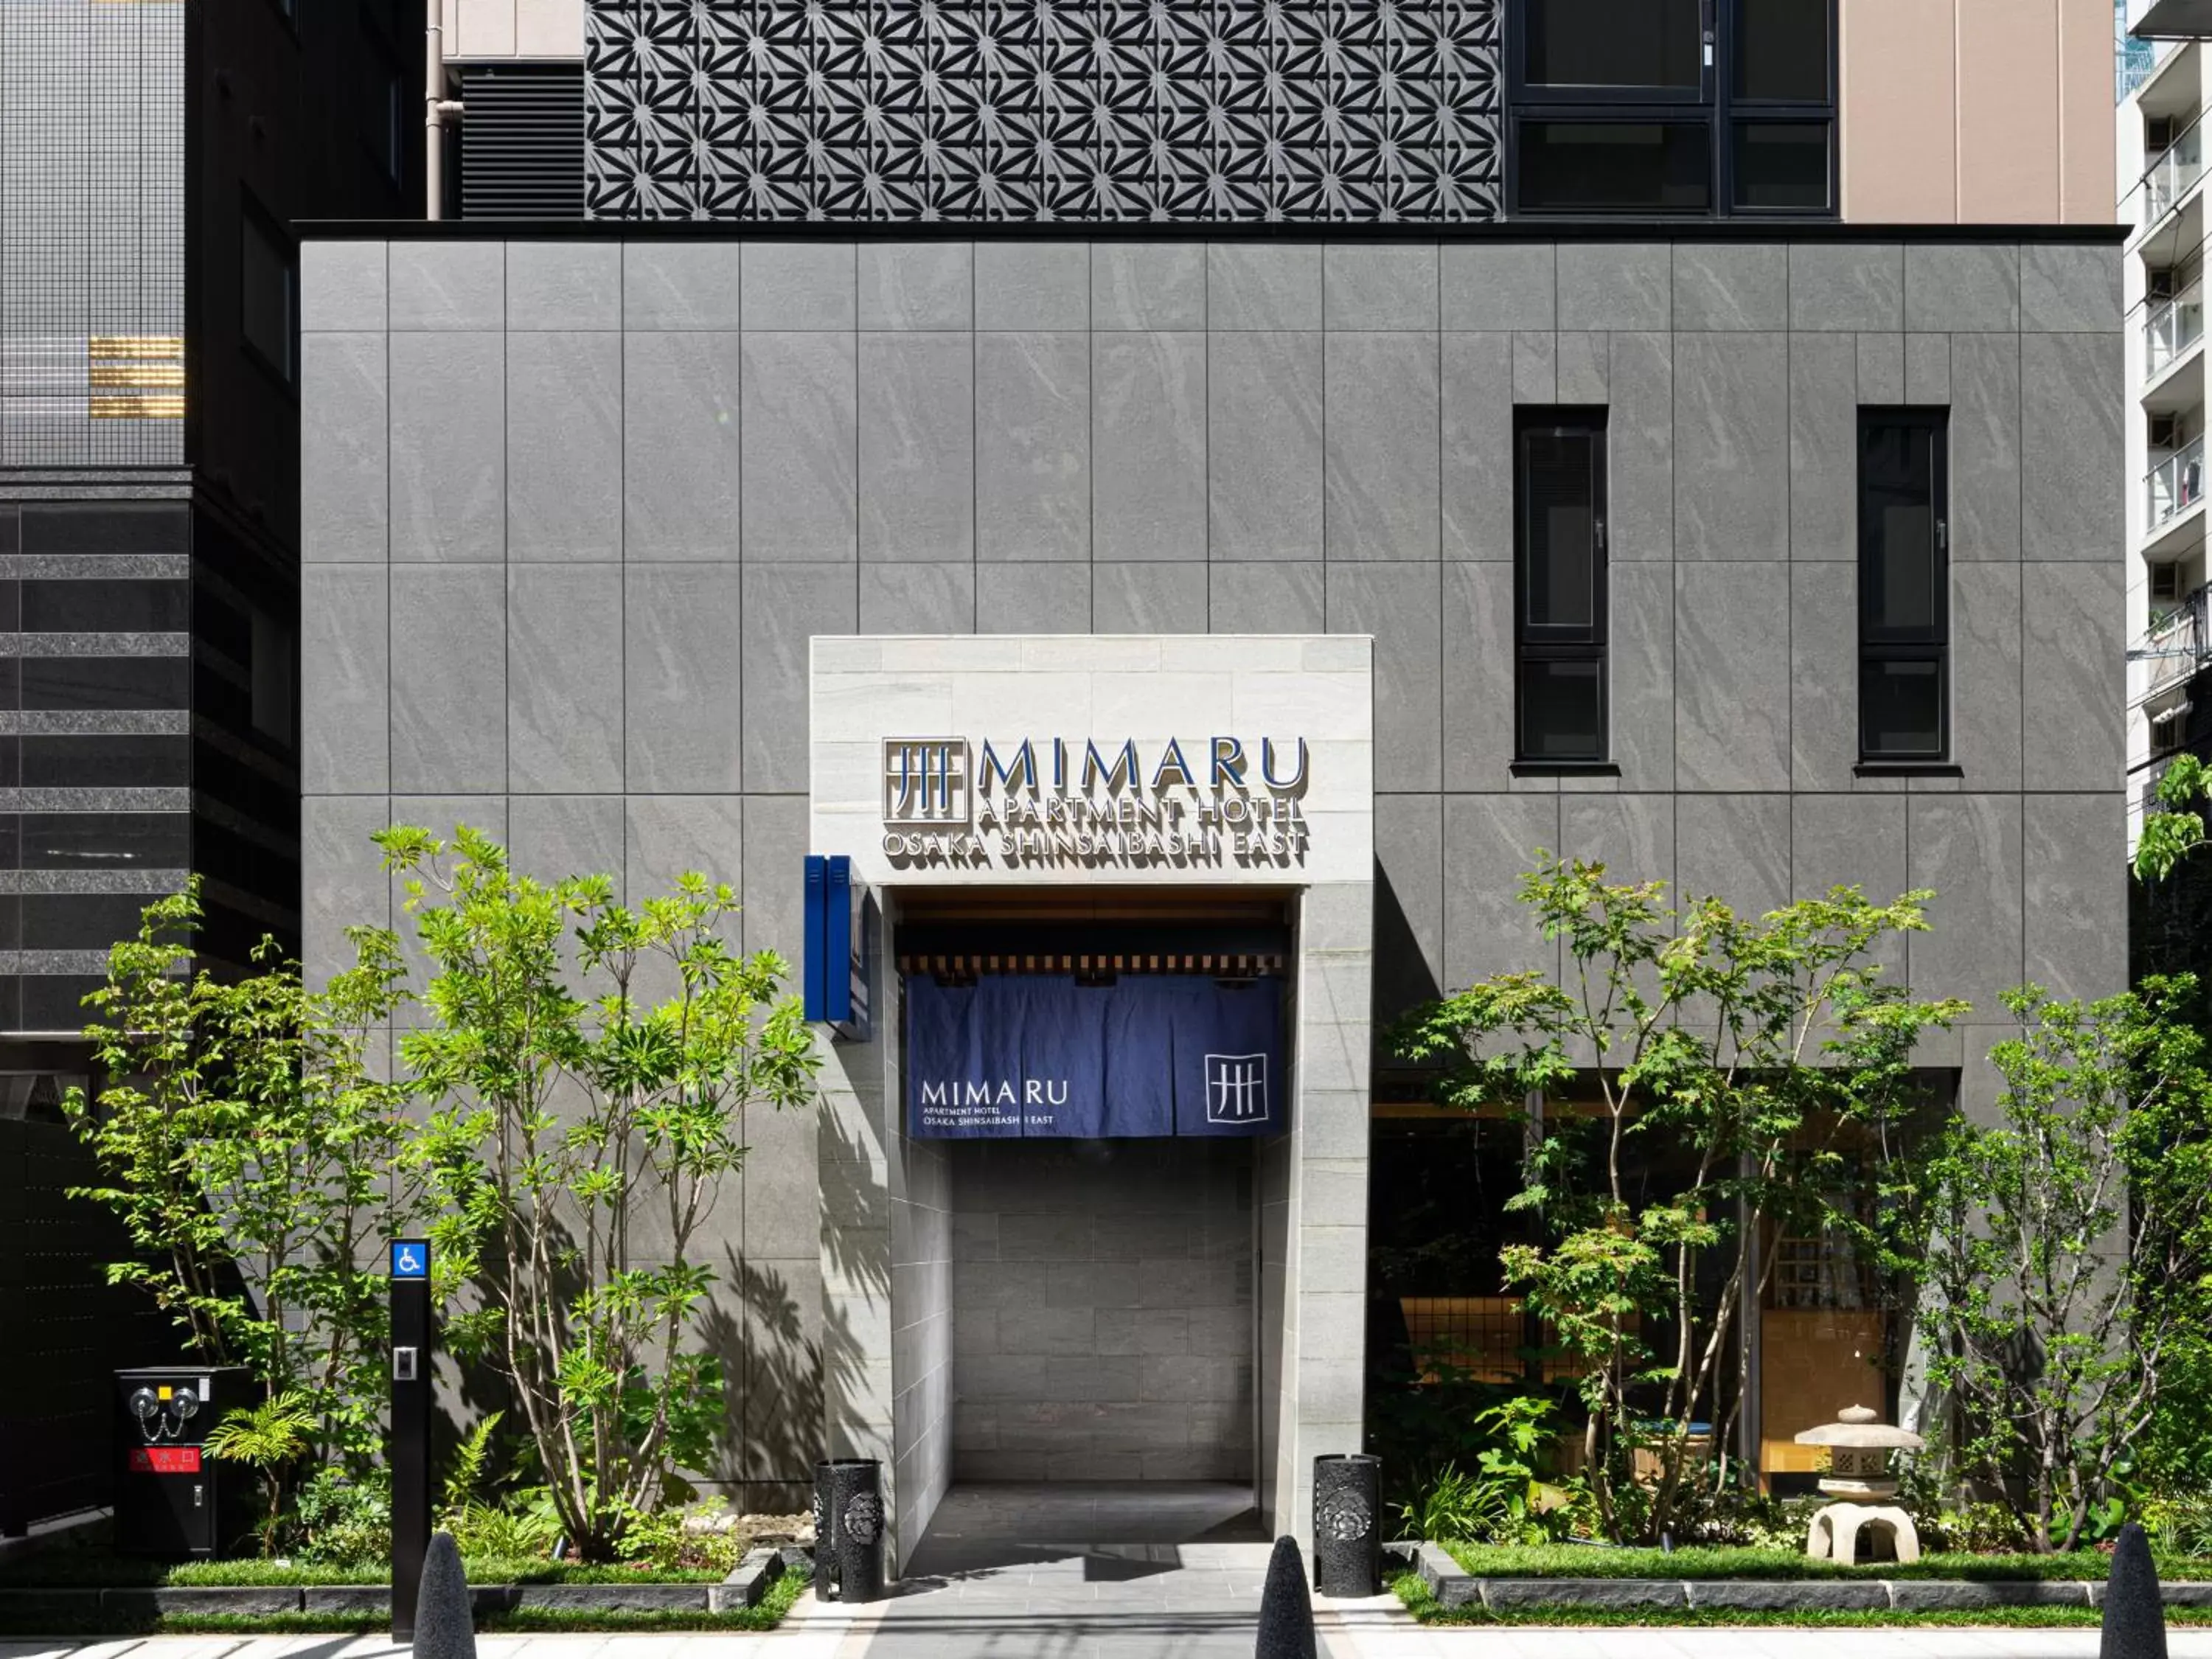 Property building in MIMARU OSAKA SHINSAIBASHI EAST